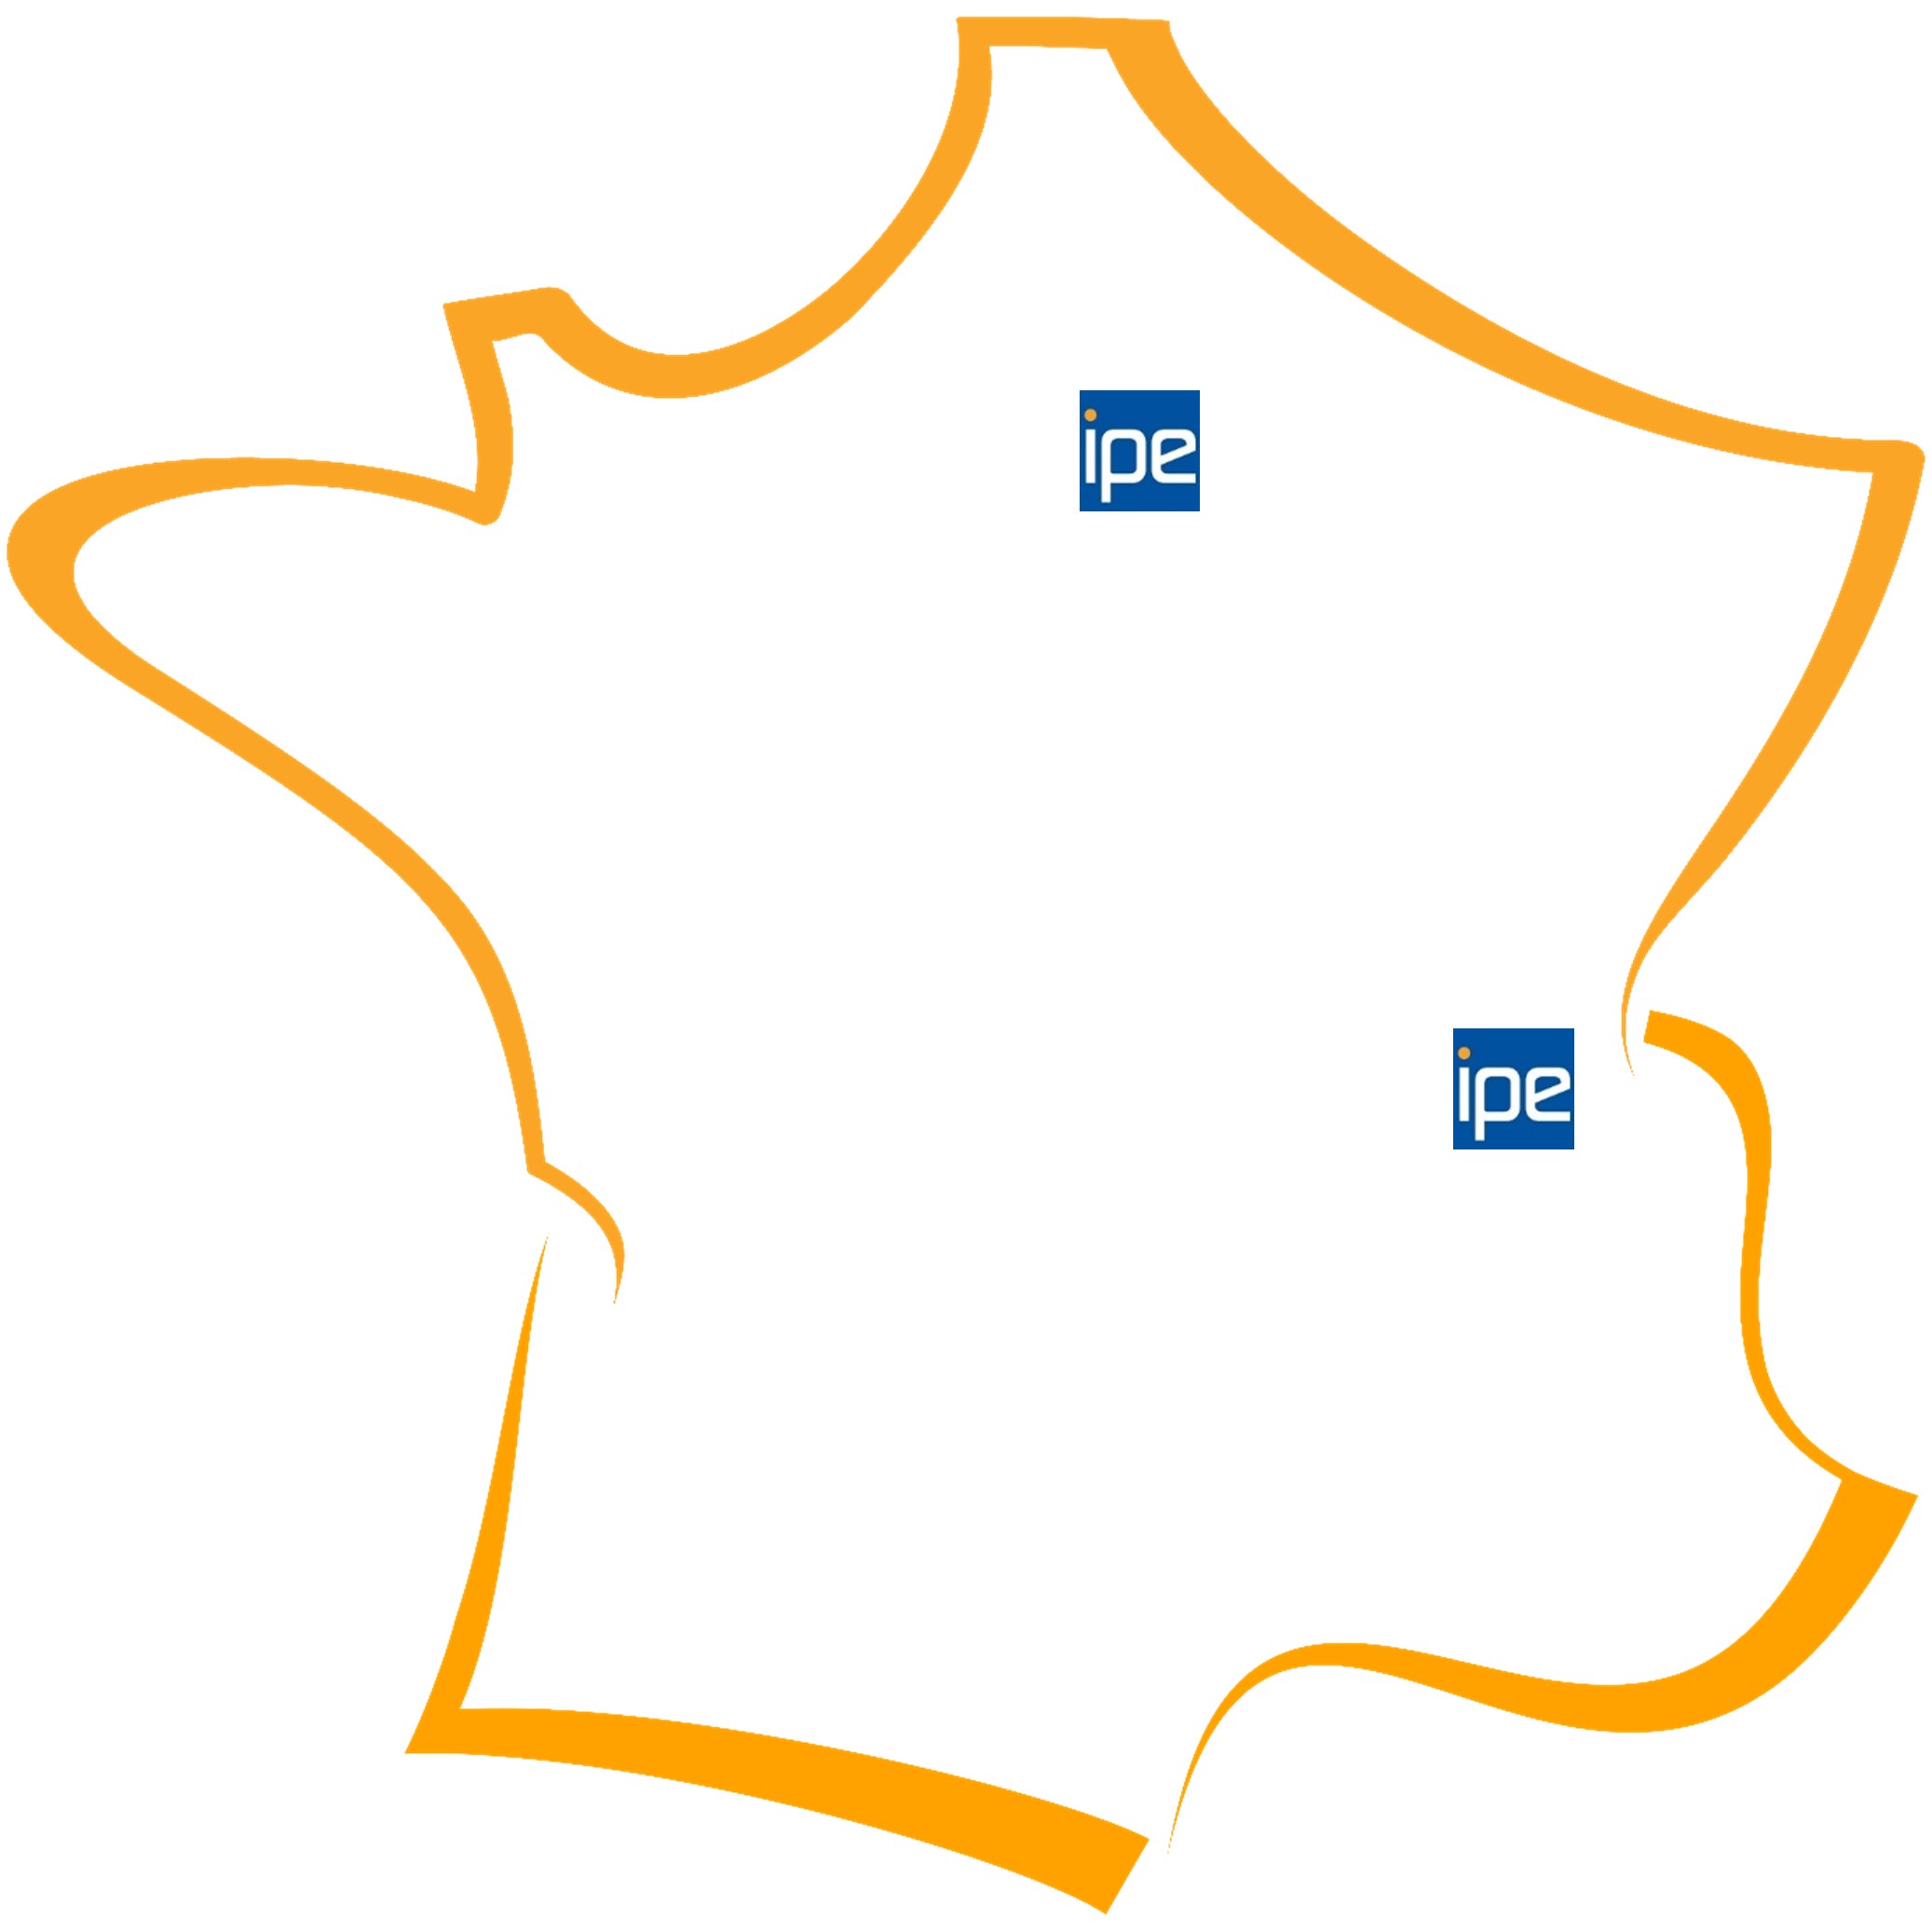 Image d'une carte de France contenant l'emplacement des agences IPE Bâtiment actuelles et à venir